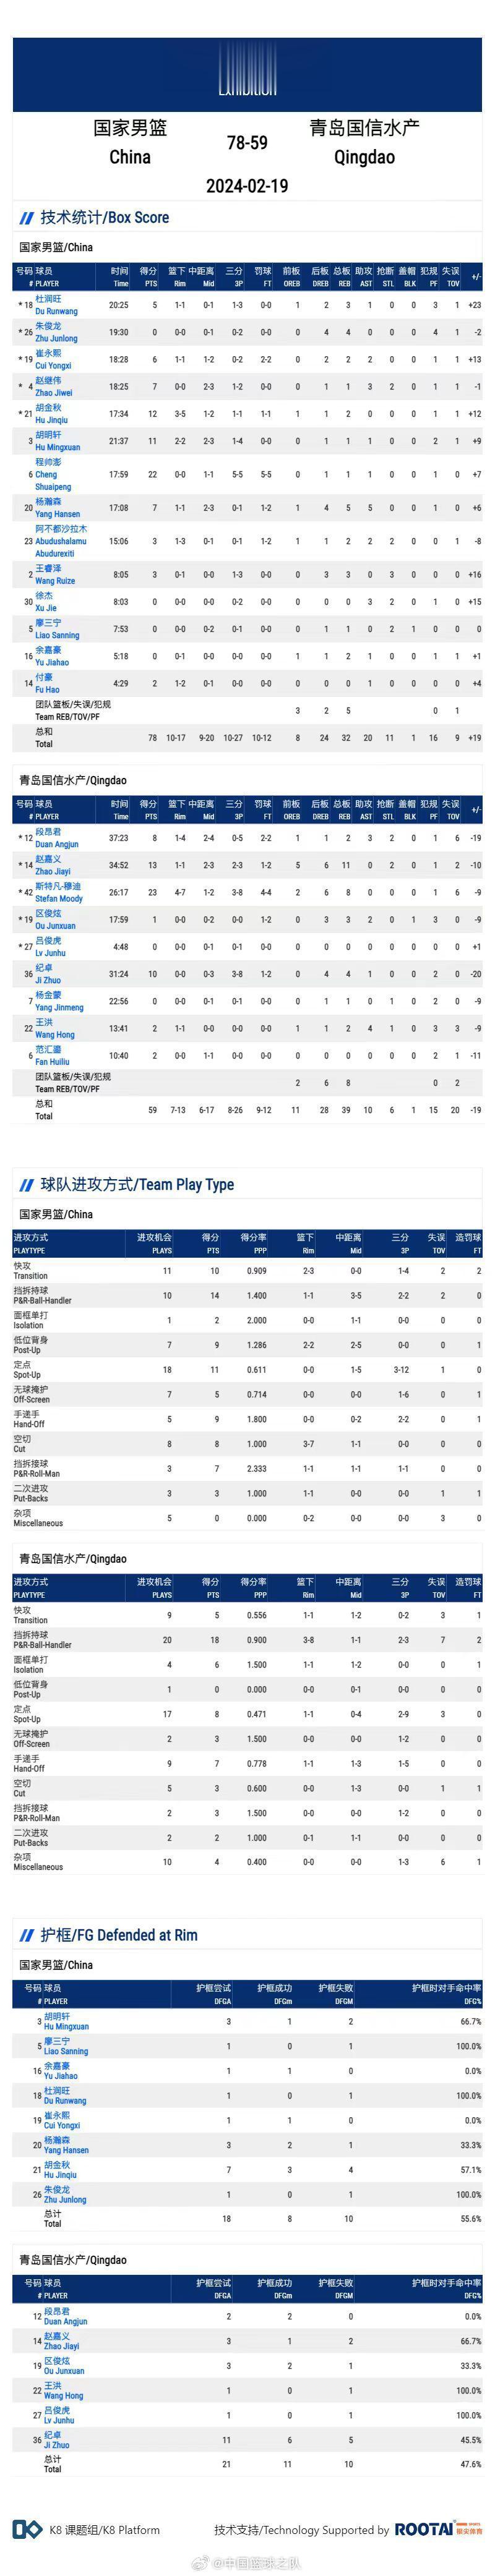 中国男篮78-59青岛 程帅澎百分百命中率砍22分 全队仅抢32个篮板(2)